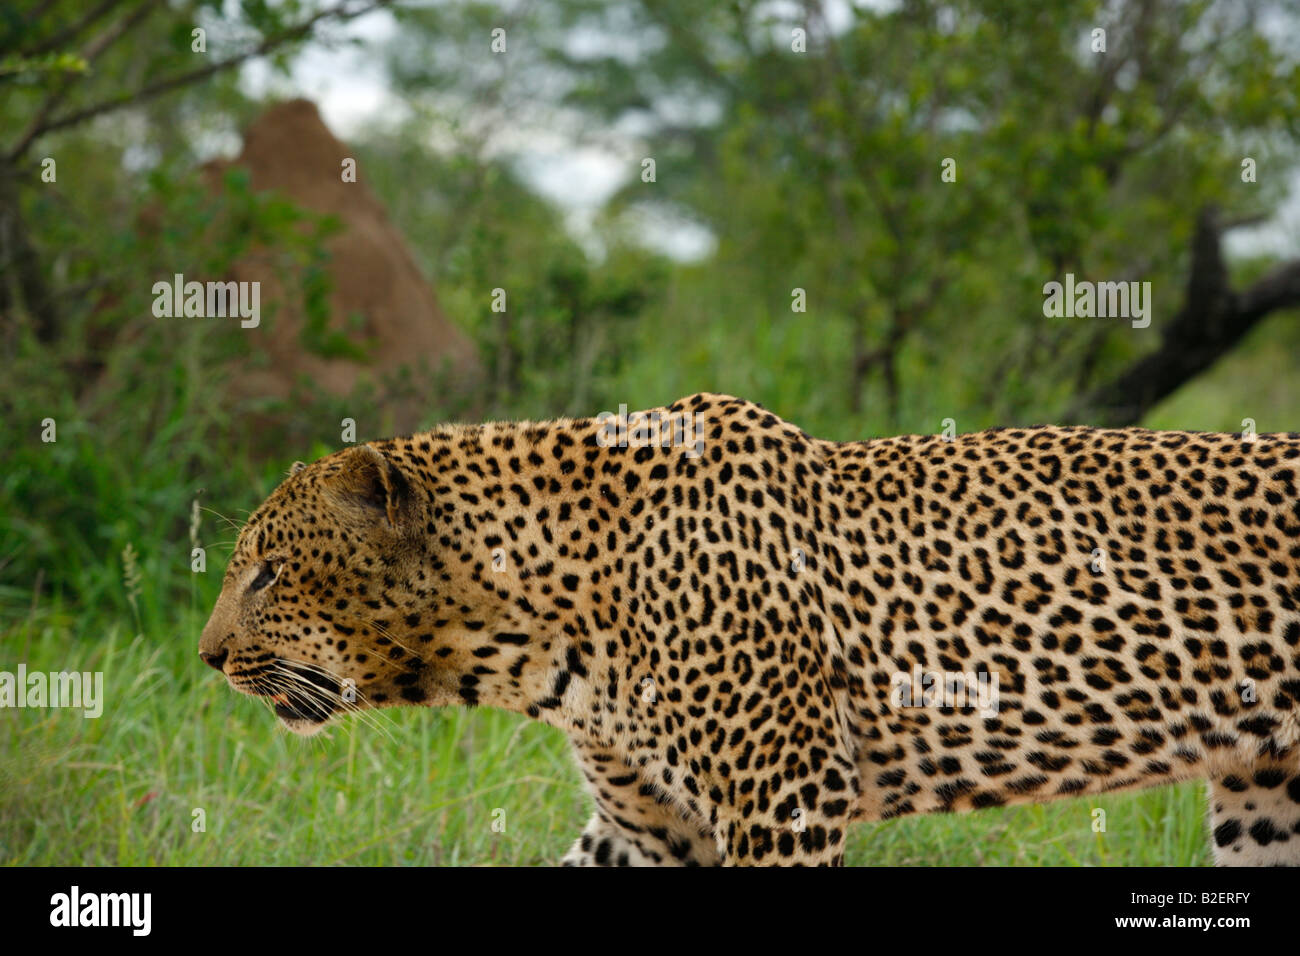 Porträt eines männlichen Leoparden in Bewegung Stockfoto